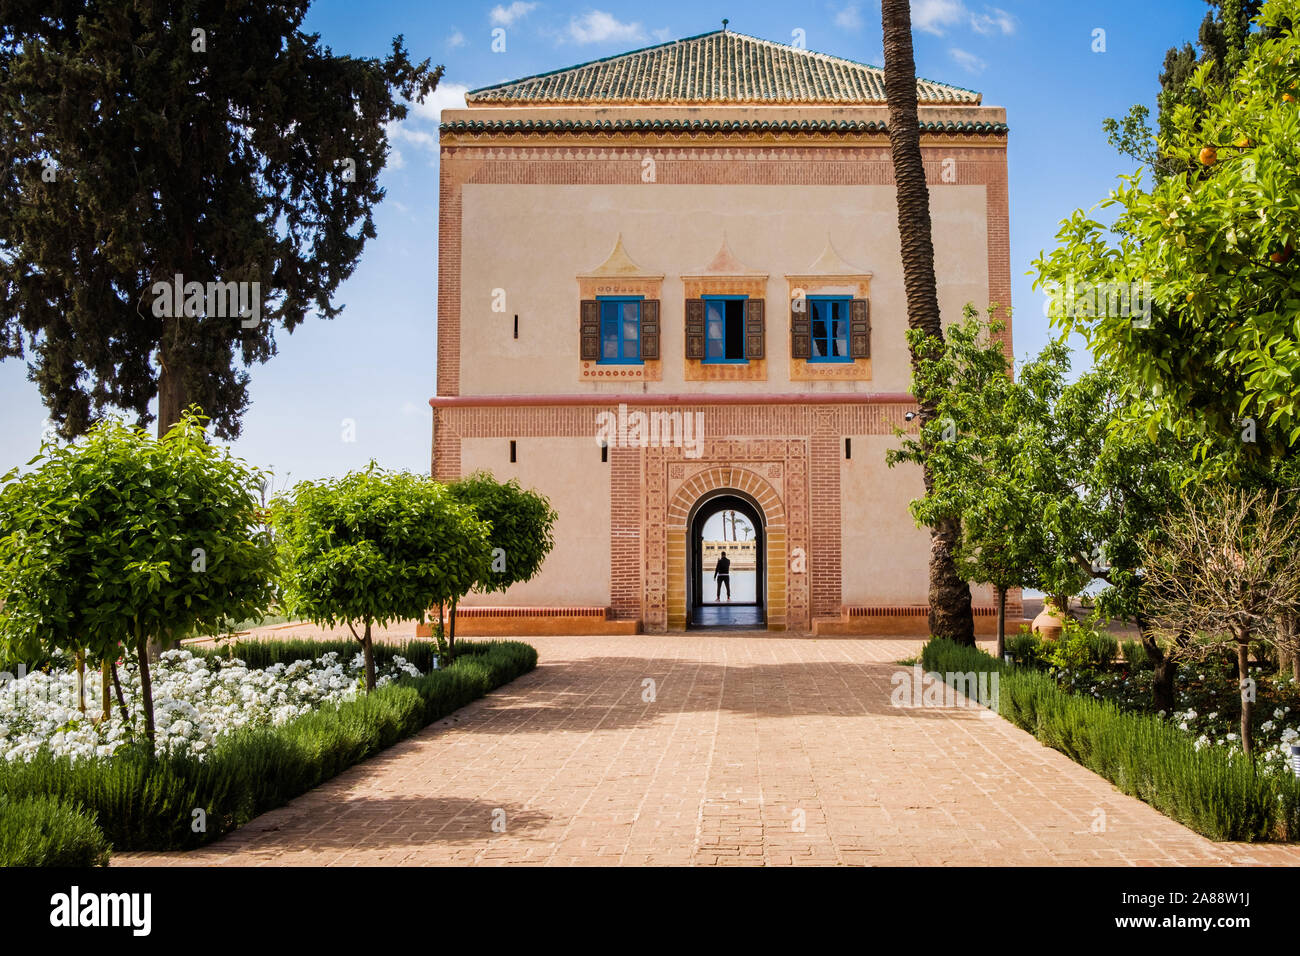 Maroc, Marrakech. La Menara, un vaste jardin d'oliviers plantés sous la dynastie des Almohades. Pavillon sur l'pondside Banque D'Images